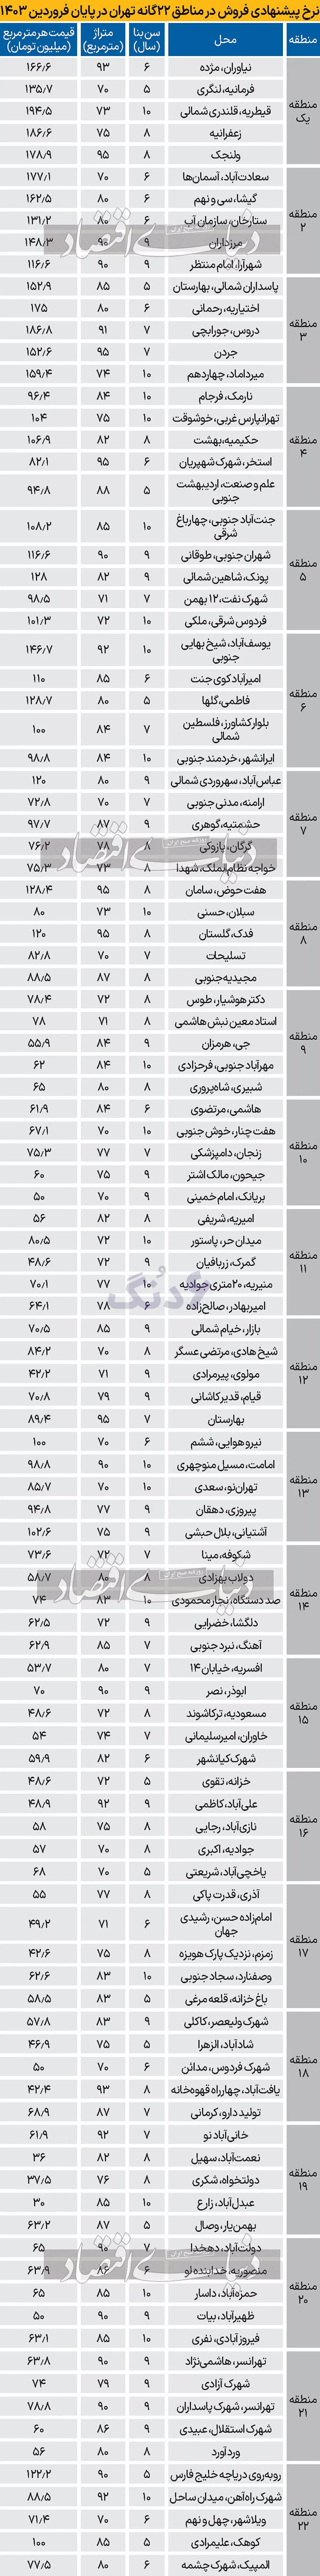 جدول قیمت ملک در شهر تهران